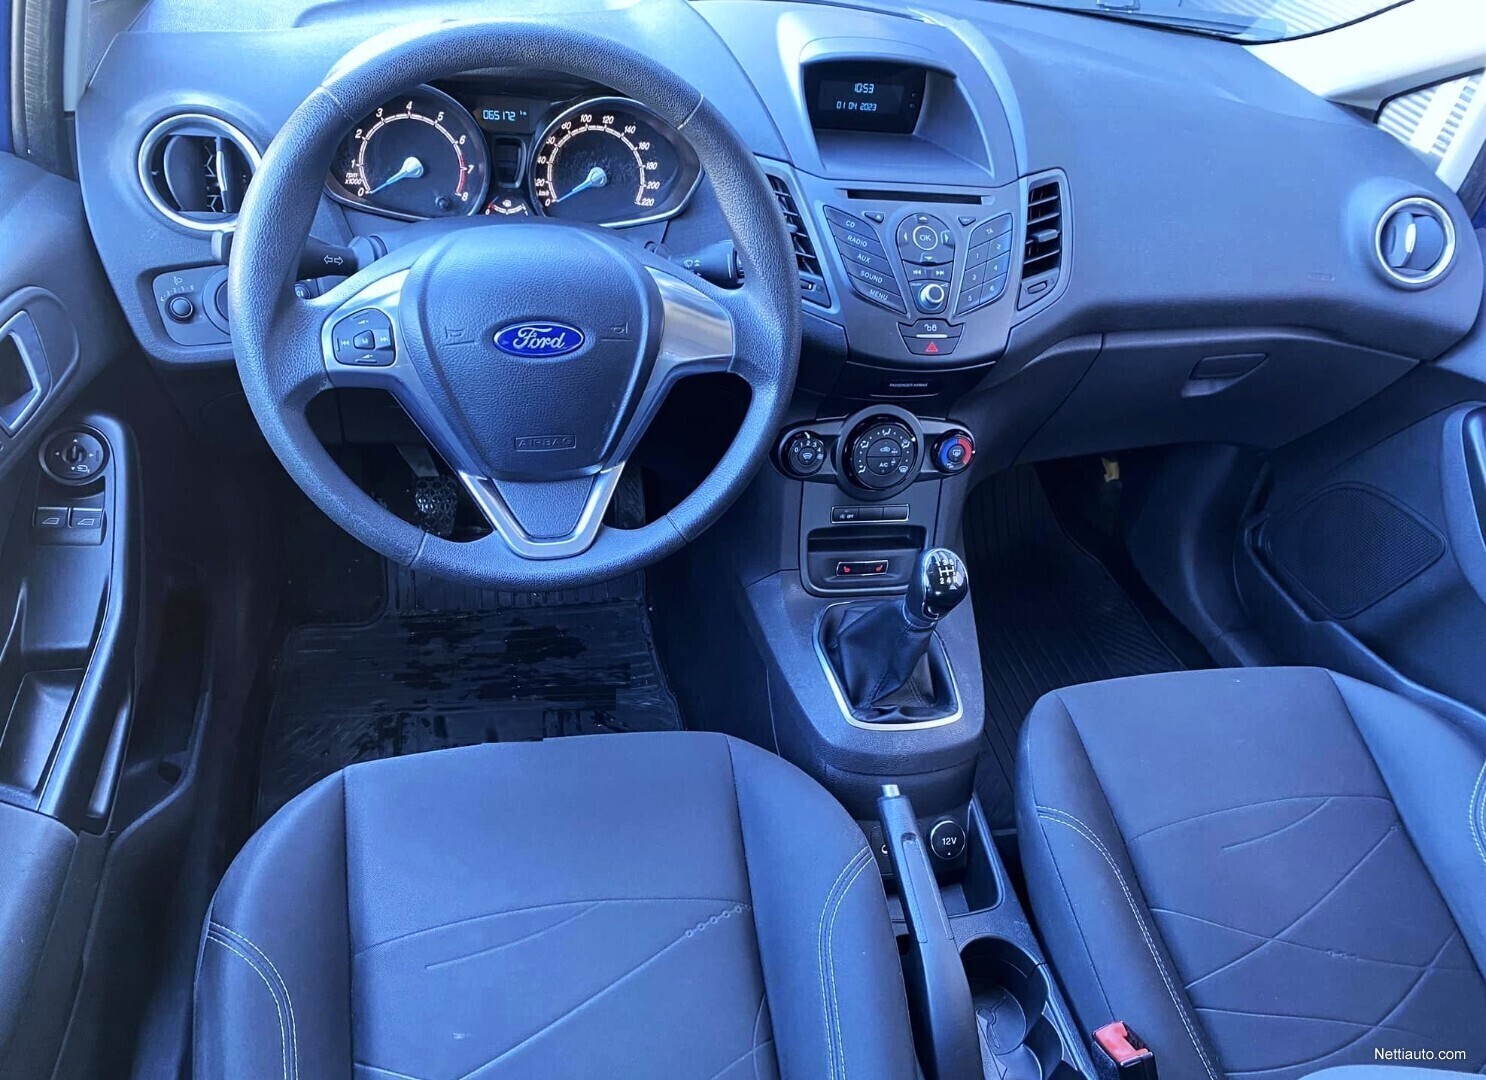 Ford Fiesta 1,0 Trend M5 5-ovinen, Vähän ajettu! Seuraava kats. 04/2025  Hatchback 2015 - Used vehicle - Nettiauto